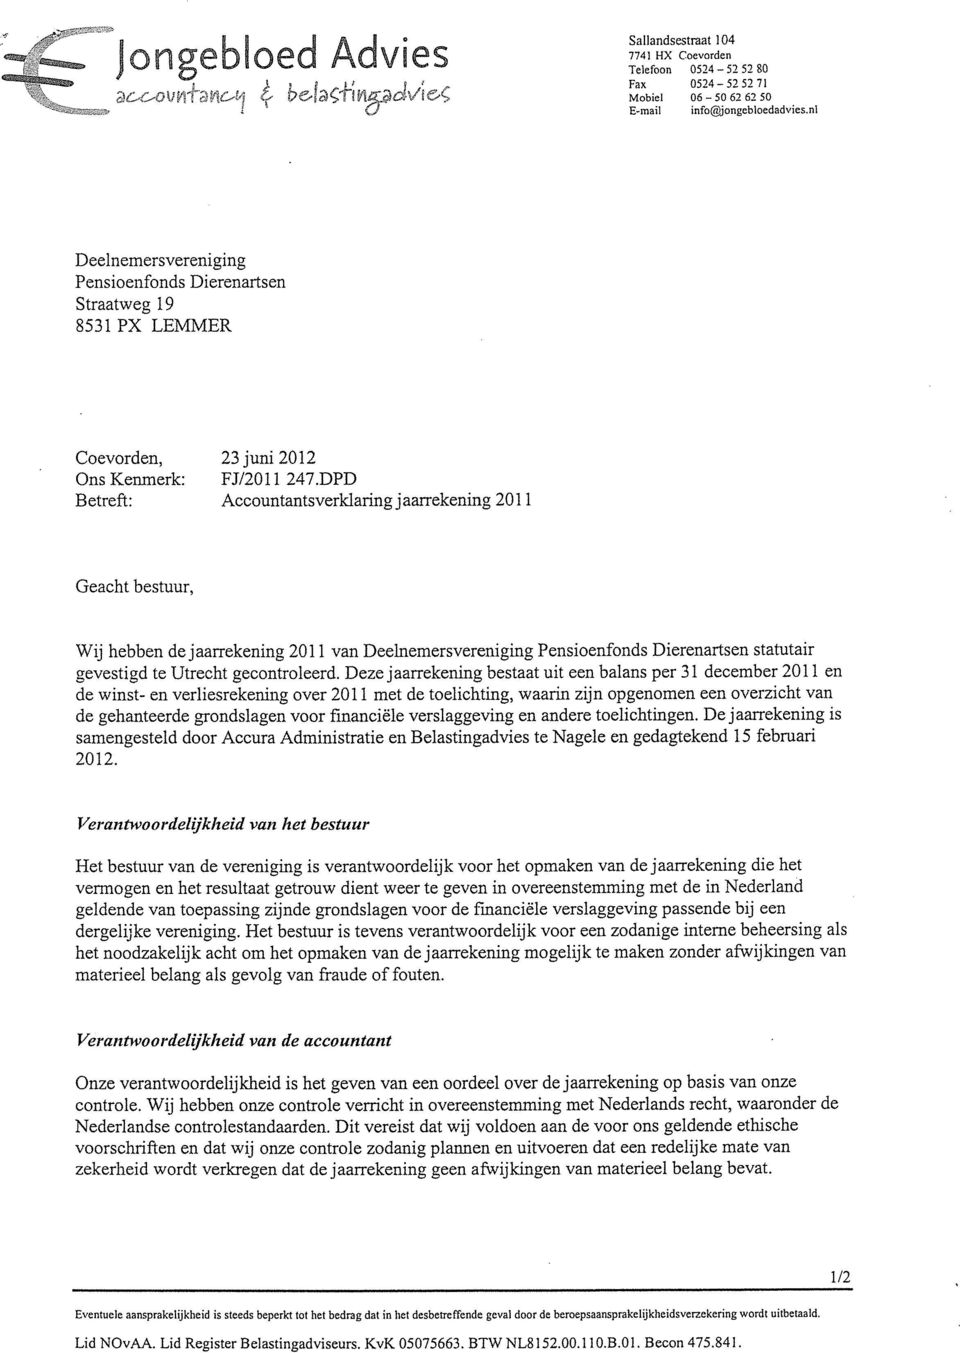 DPD Betreft: Accountantsverldaring jaarrekening 2011 Geacht bestuur, Wij hebben de jaarrekening 2011 van Deelnemersvereniging Pensioenfonds Dierenartsen statutair gevestigd te Utrecht gecontroleerd.